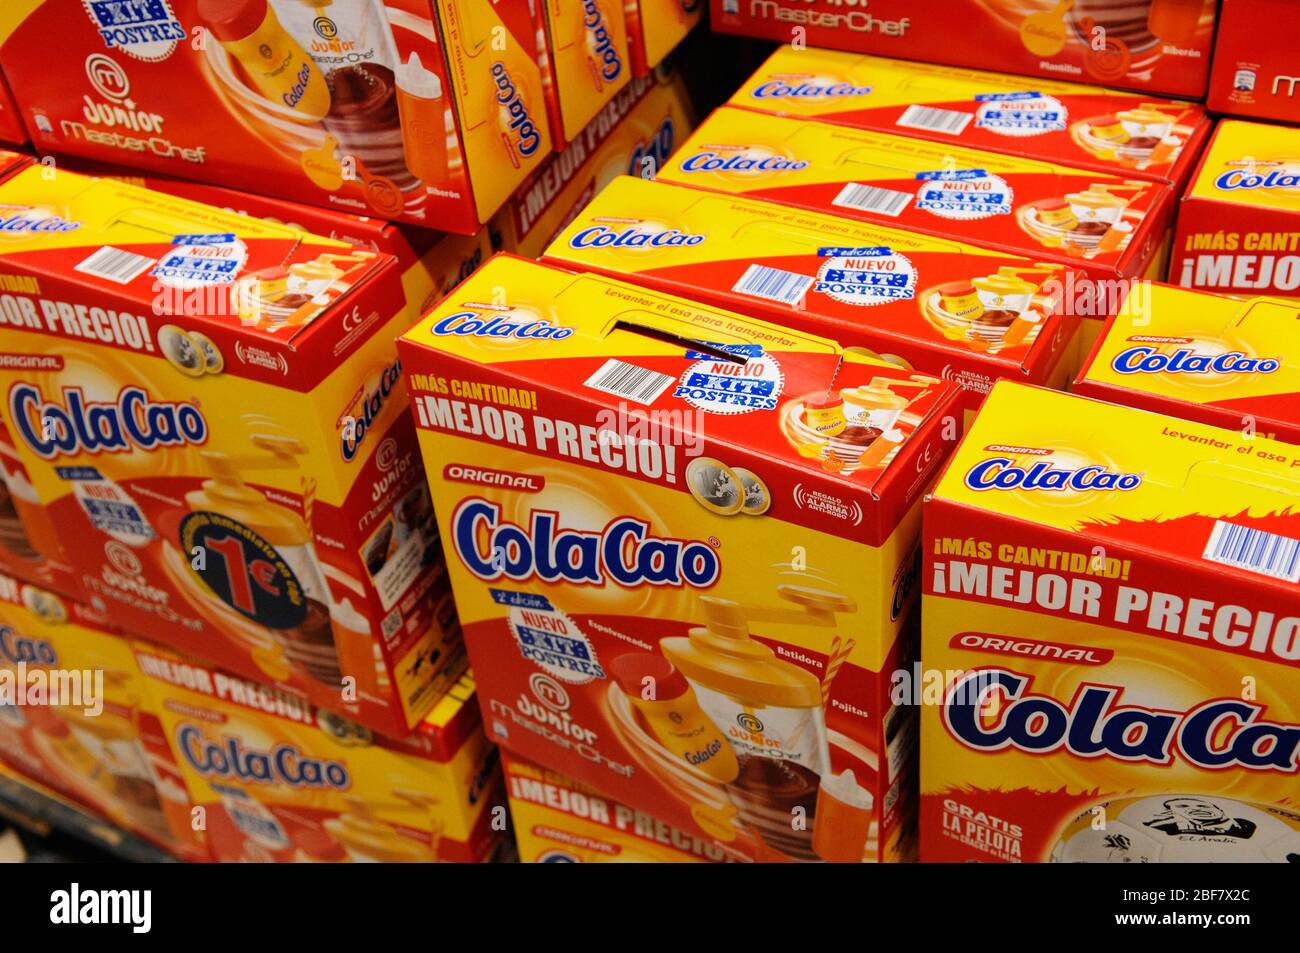 COLACAO Original Hot Chocolate